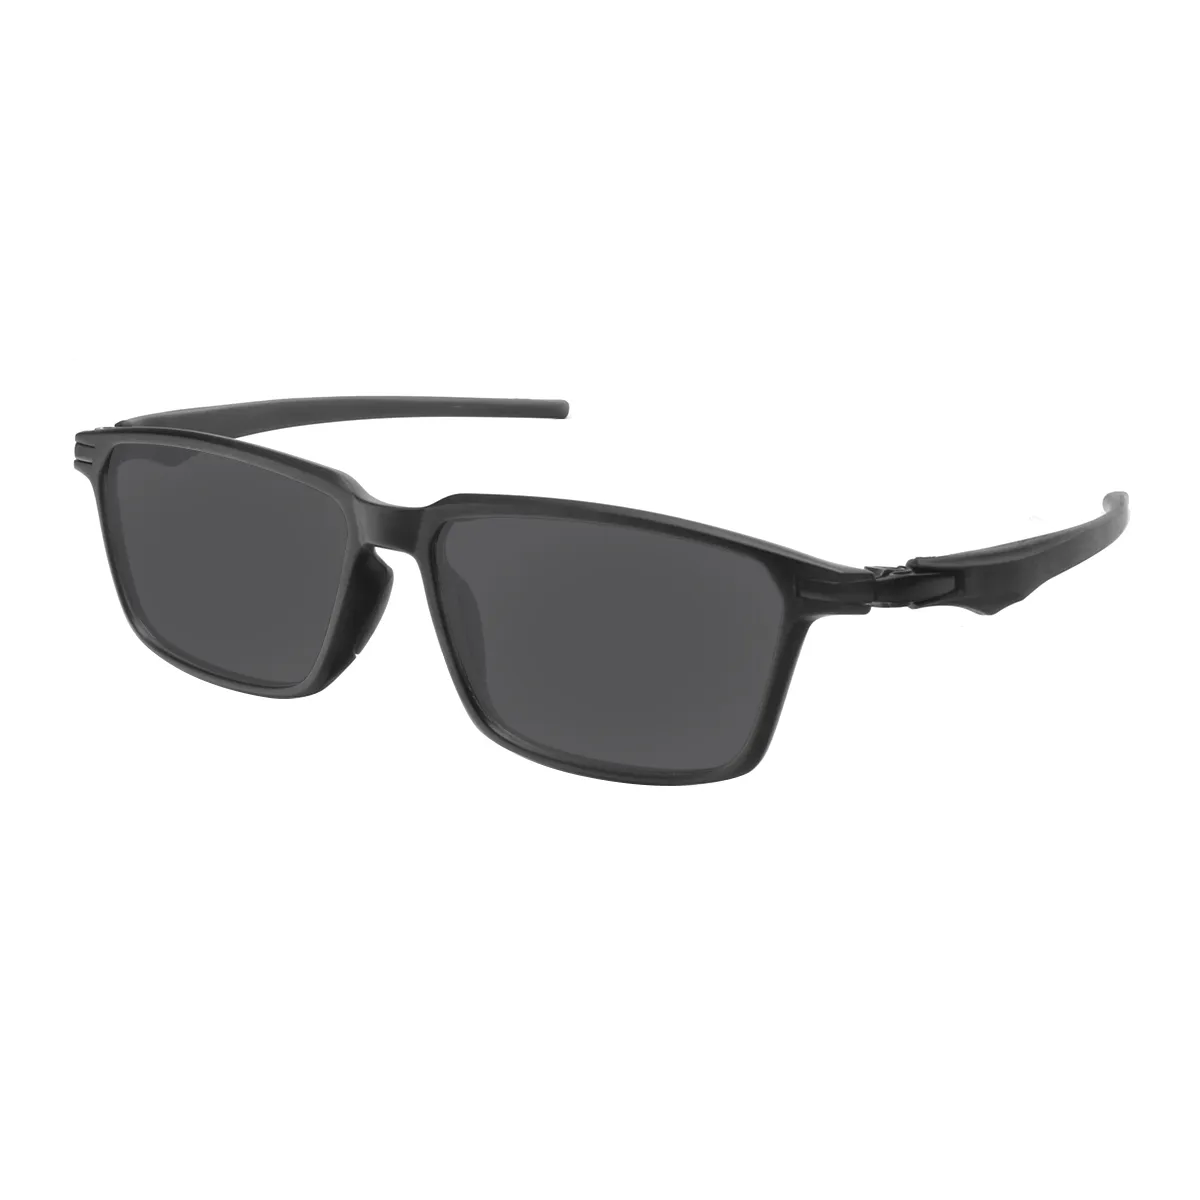 Salter - Rectangle Black Sunglasses for Men & Women